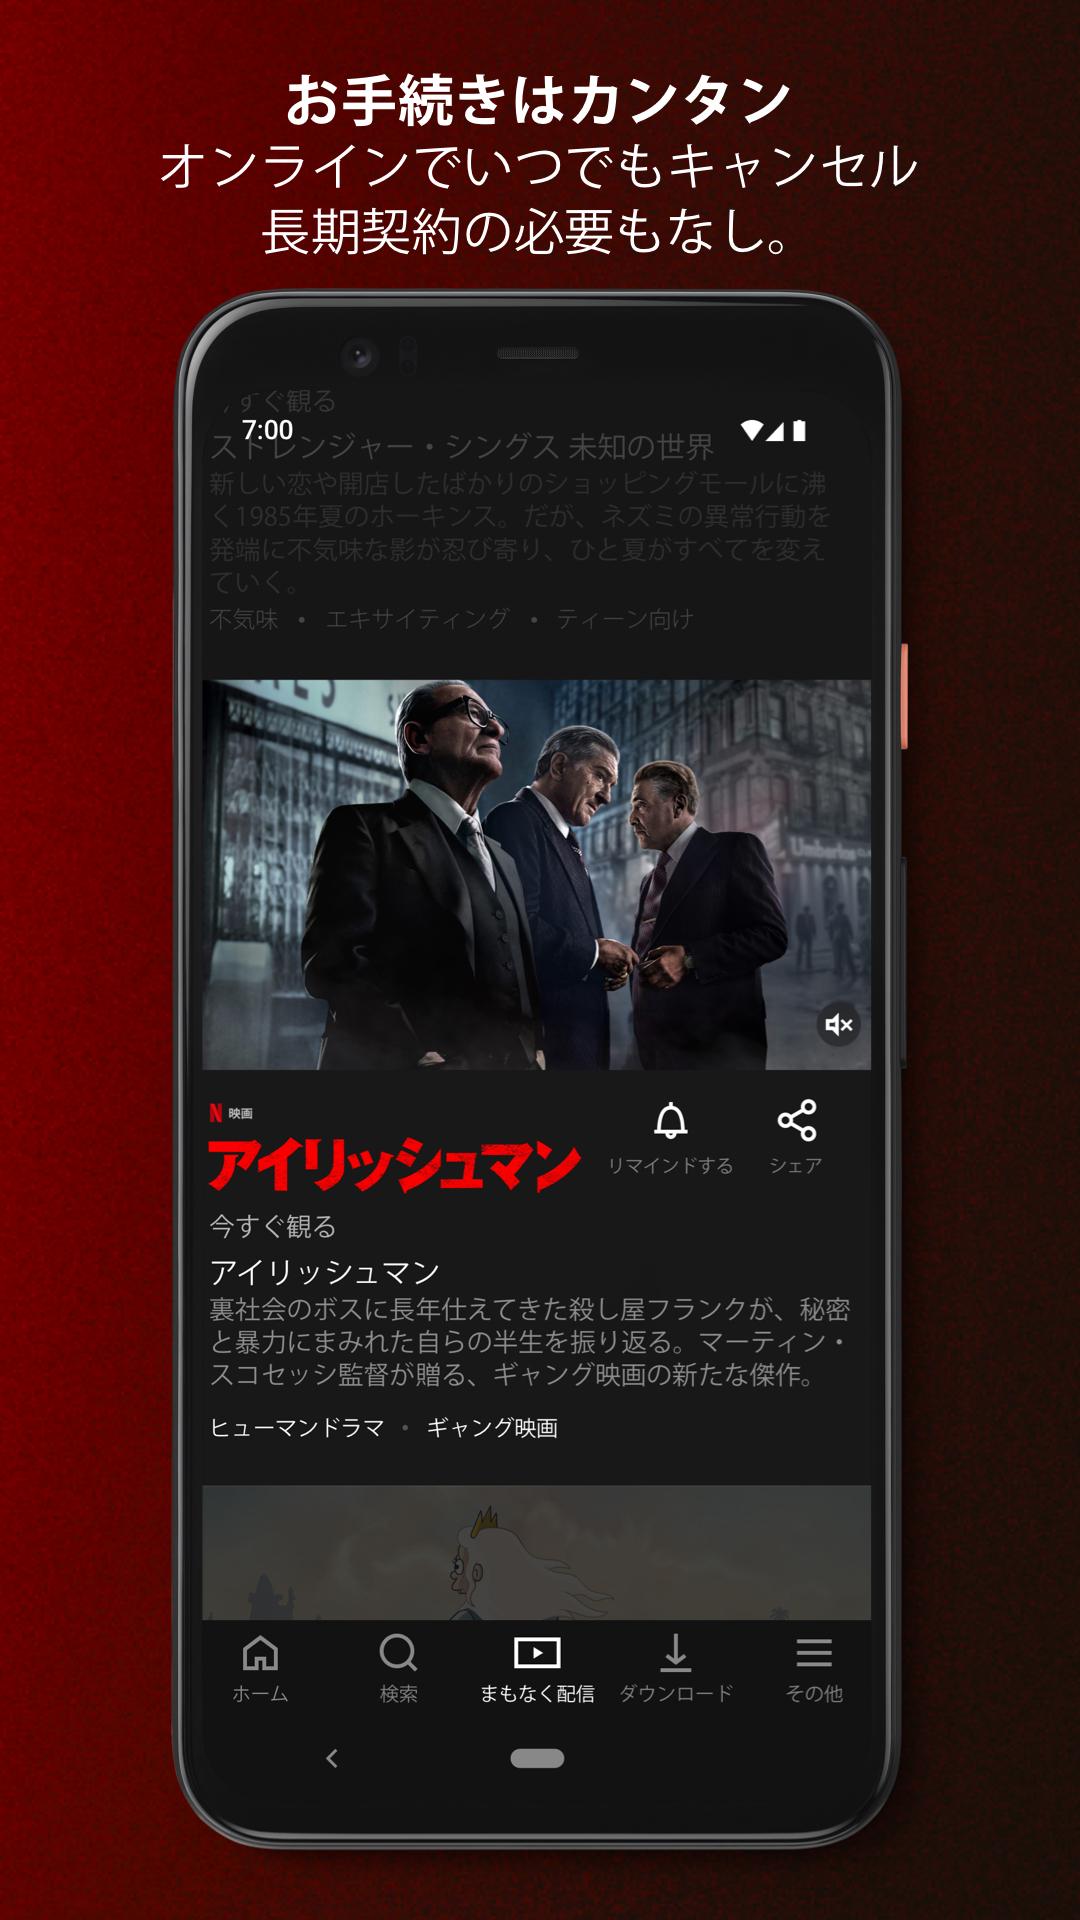 無料で Netflix アプリの最新版 Apk7 68 4 Build 38 35048をダウンロードー Android用 Netflix Apk の最新バージョンをダウンロード Apkfab Com Jp